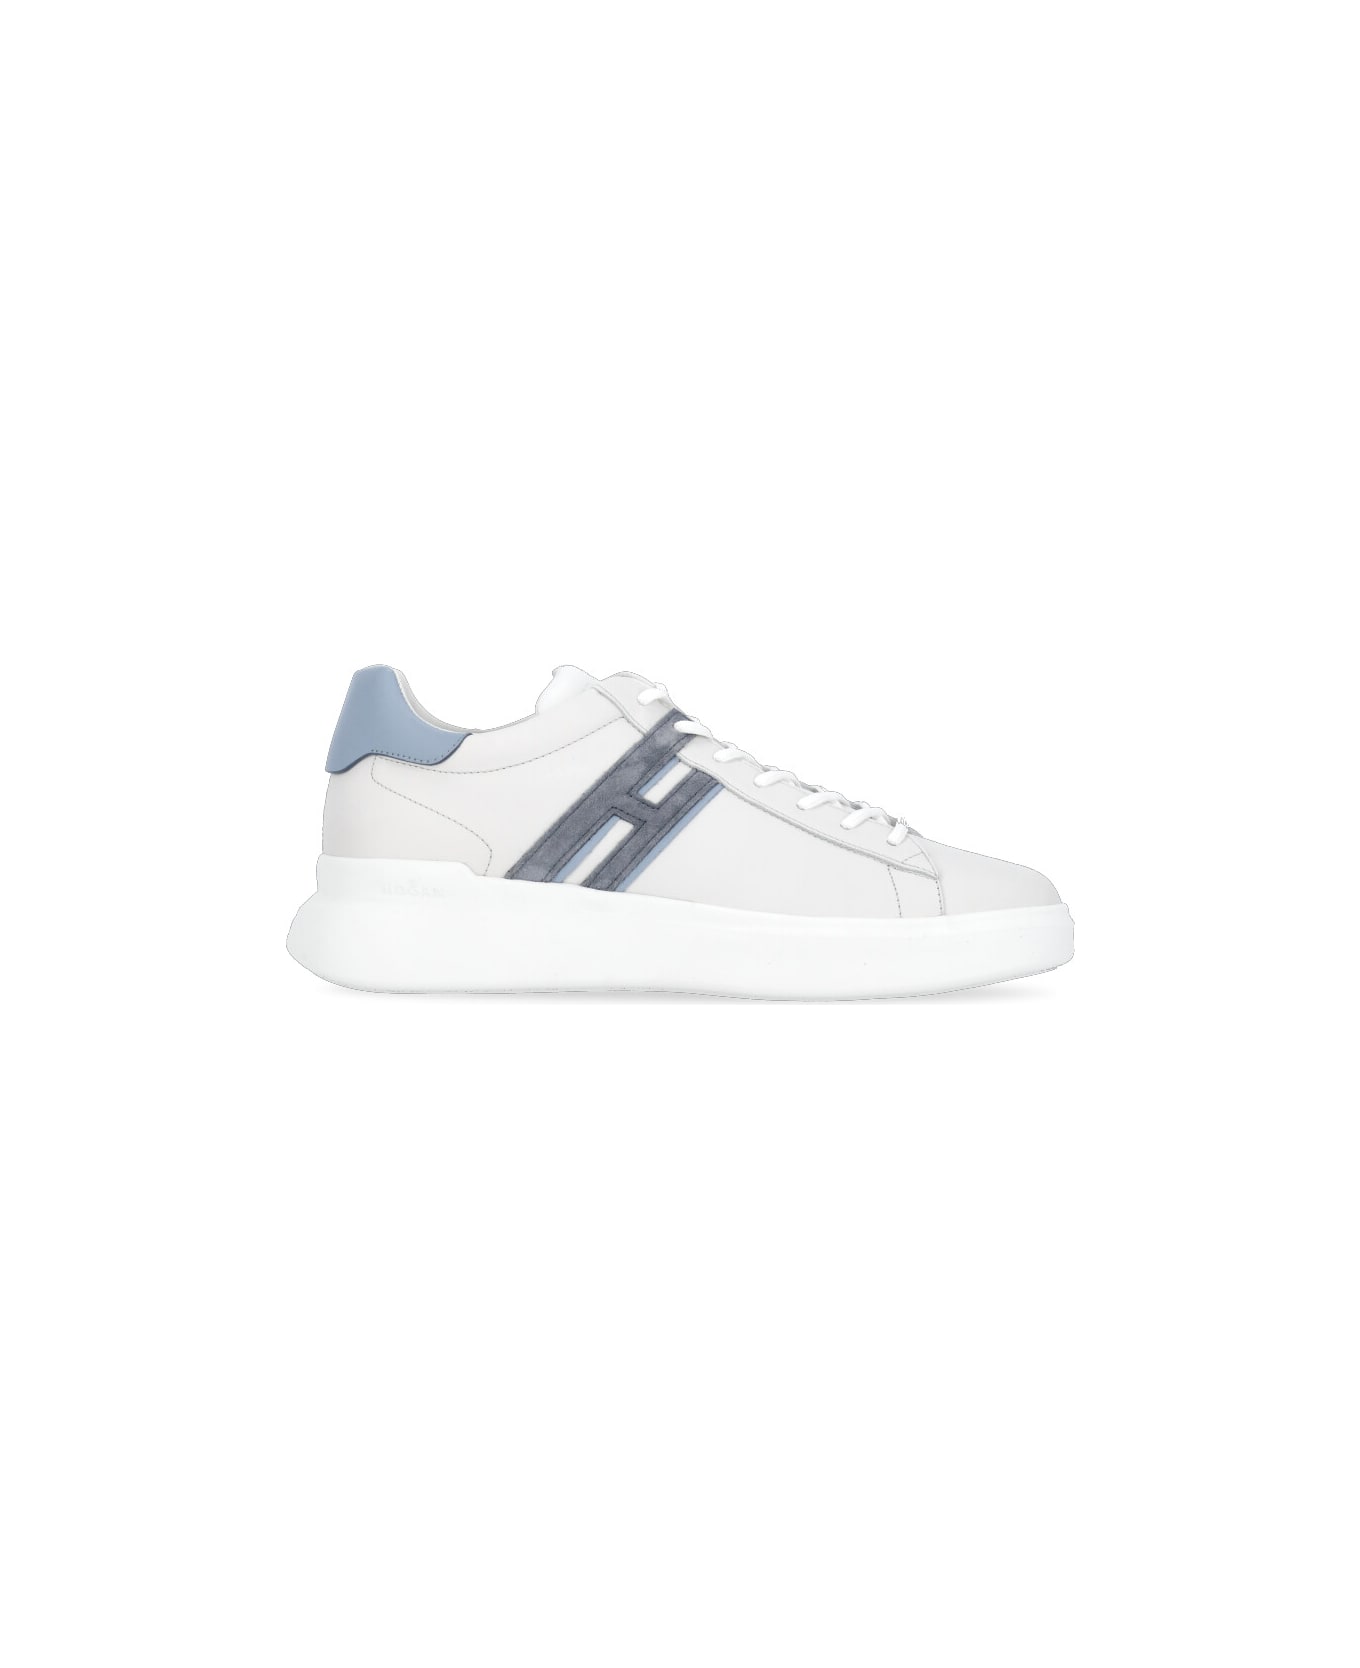 Hogan H580 Sneakers - White スニーカー